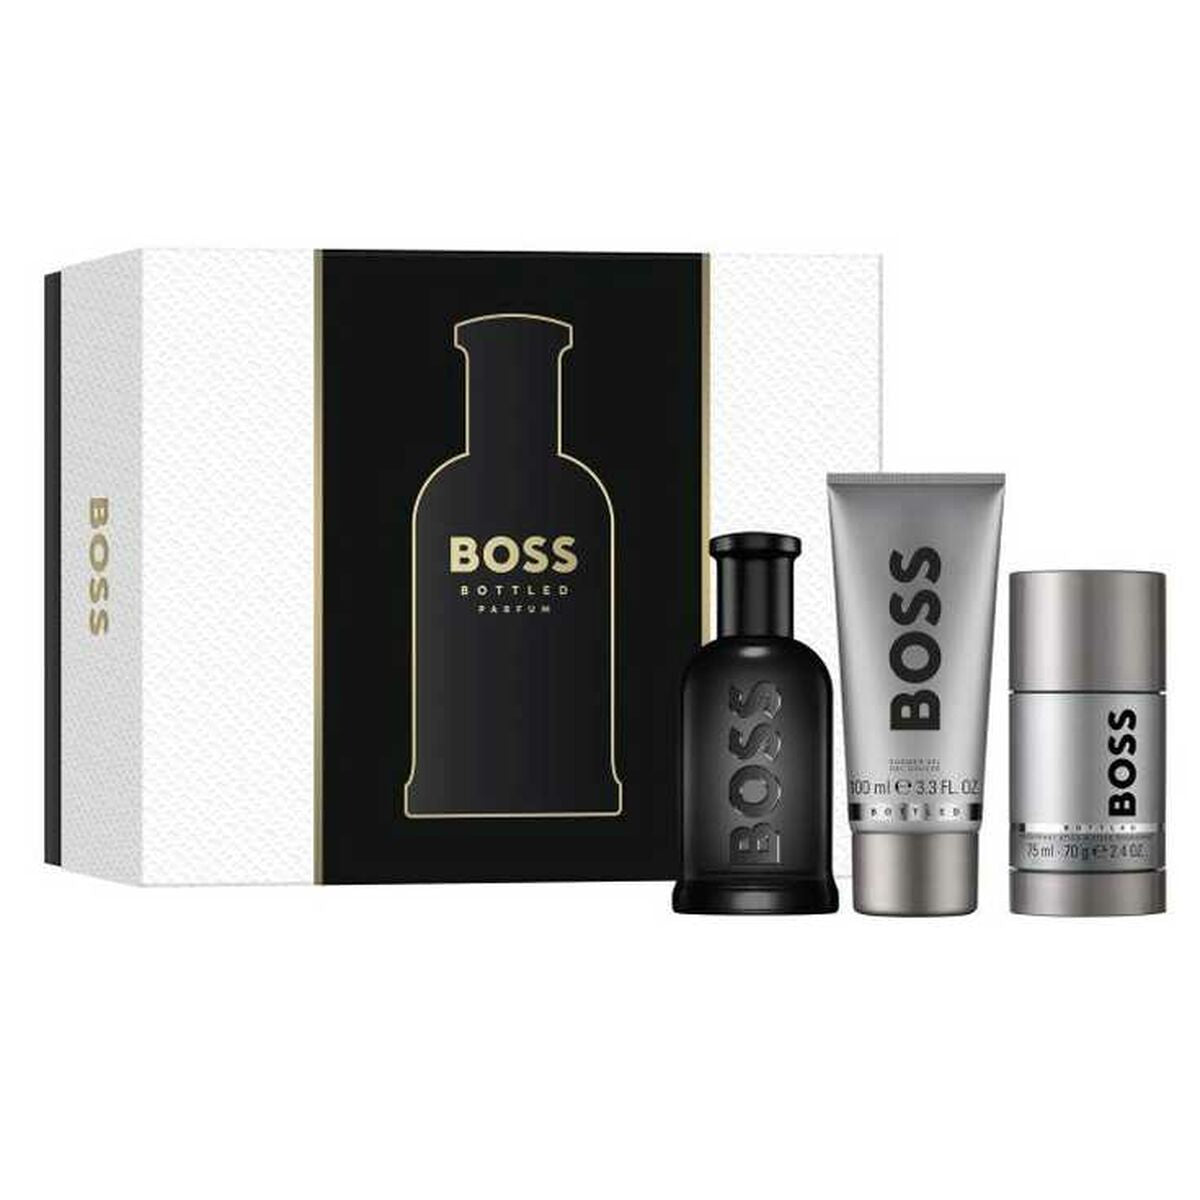 Kaufe Set mit Herrenparfüm Hugo Boss Boss Bottled Parfum 3 Stücke bei AWK Flagship um € 83.00